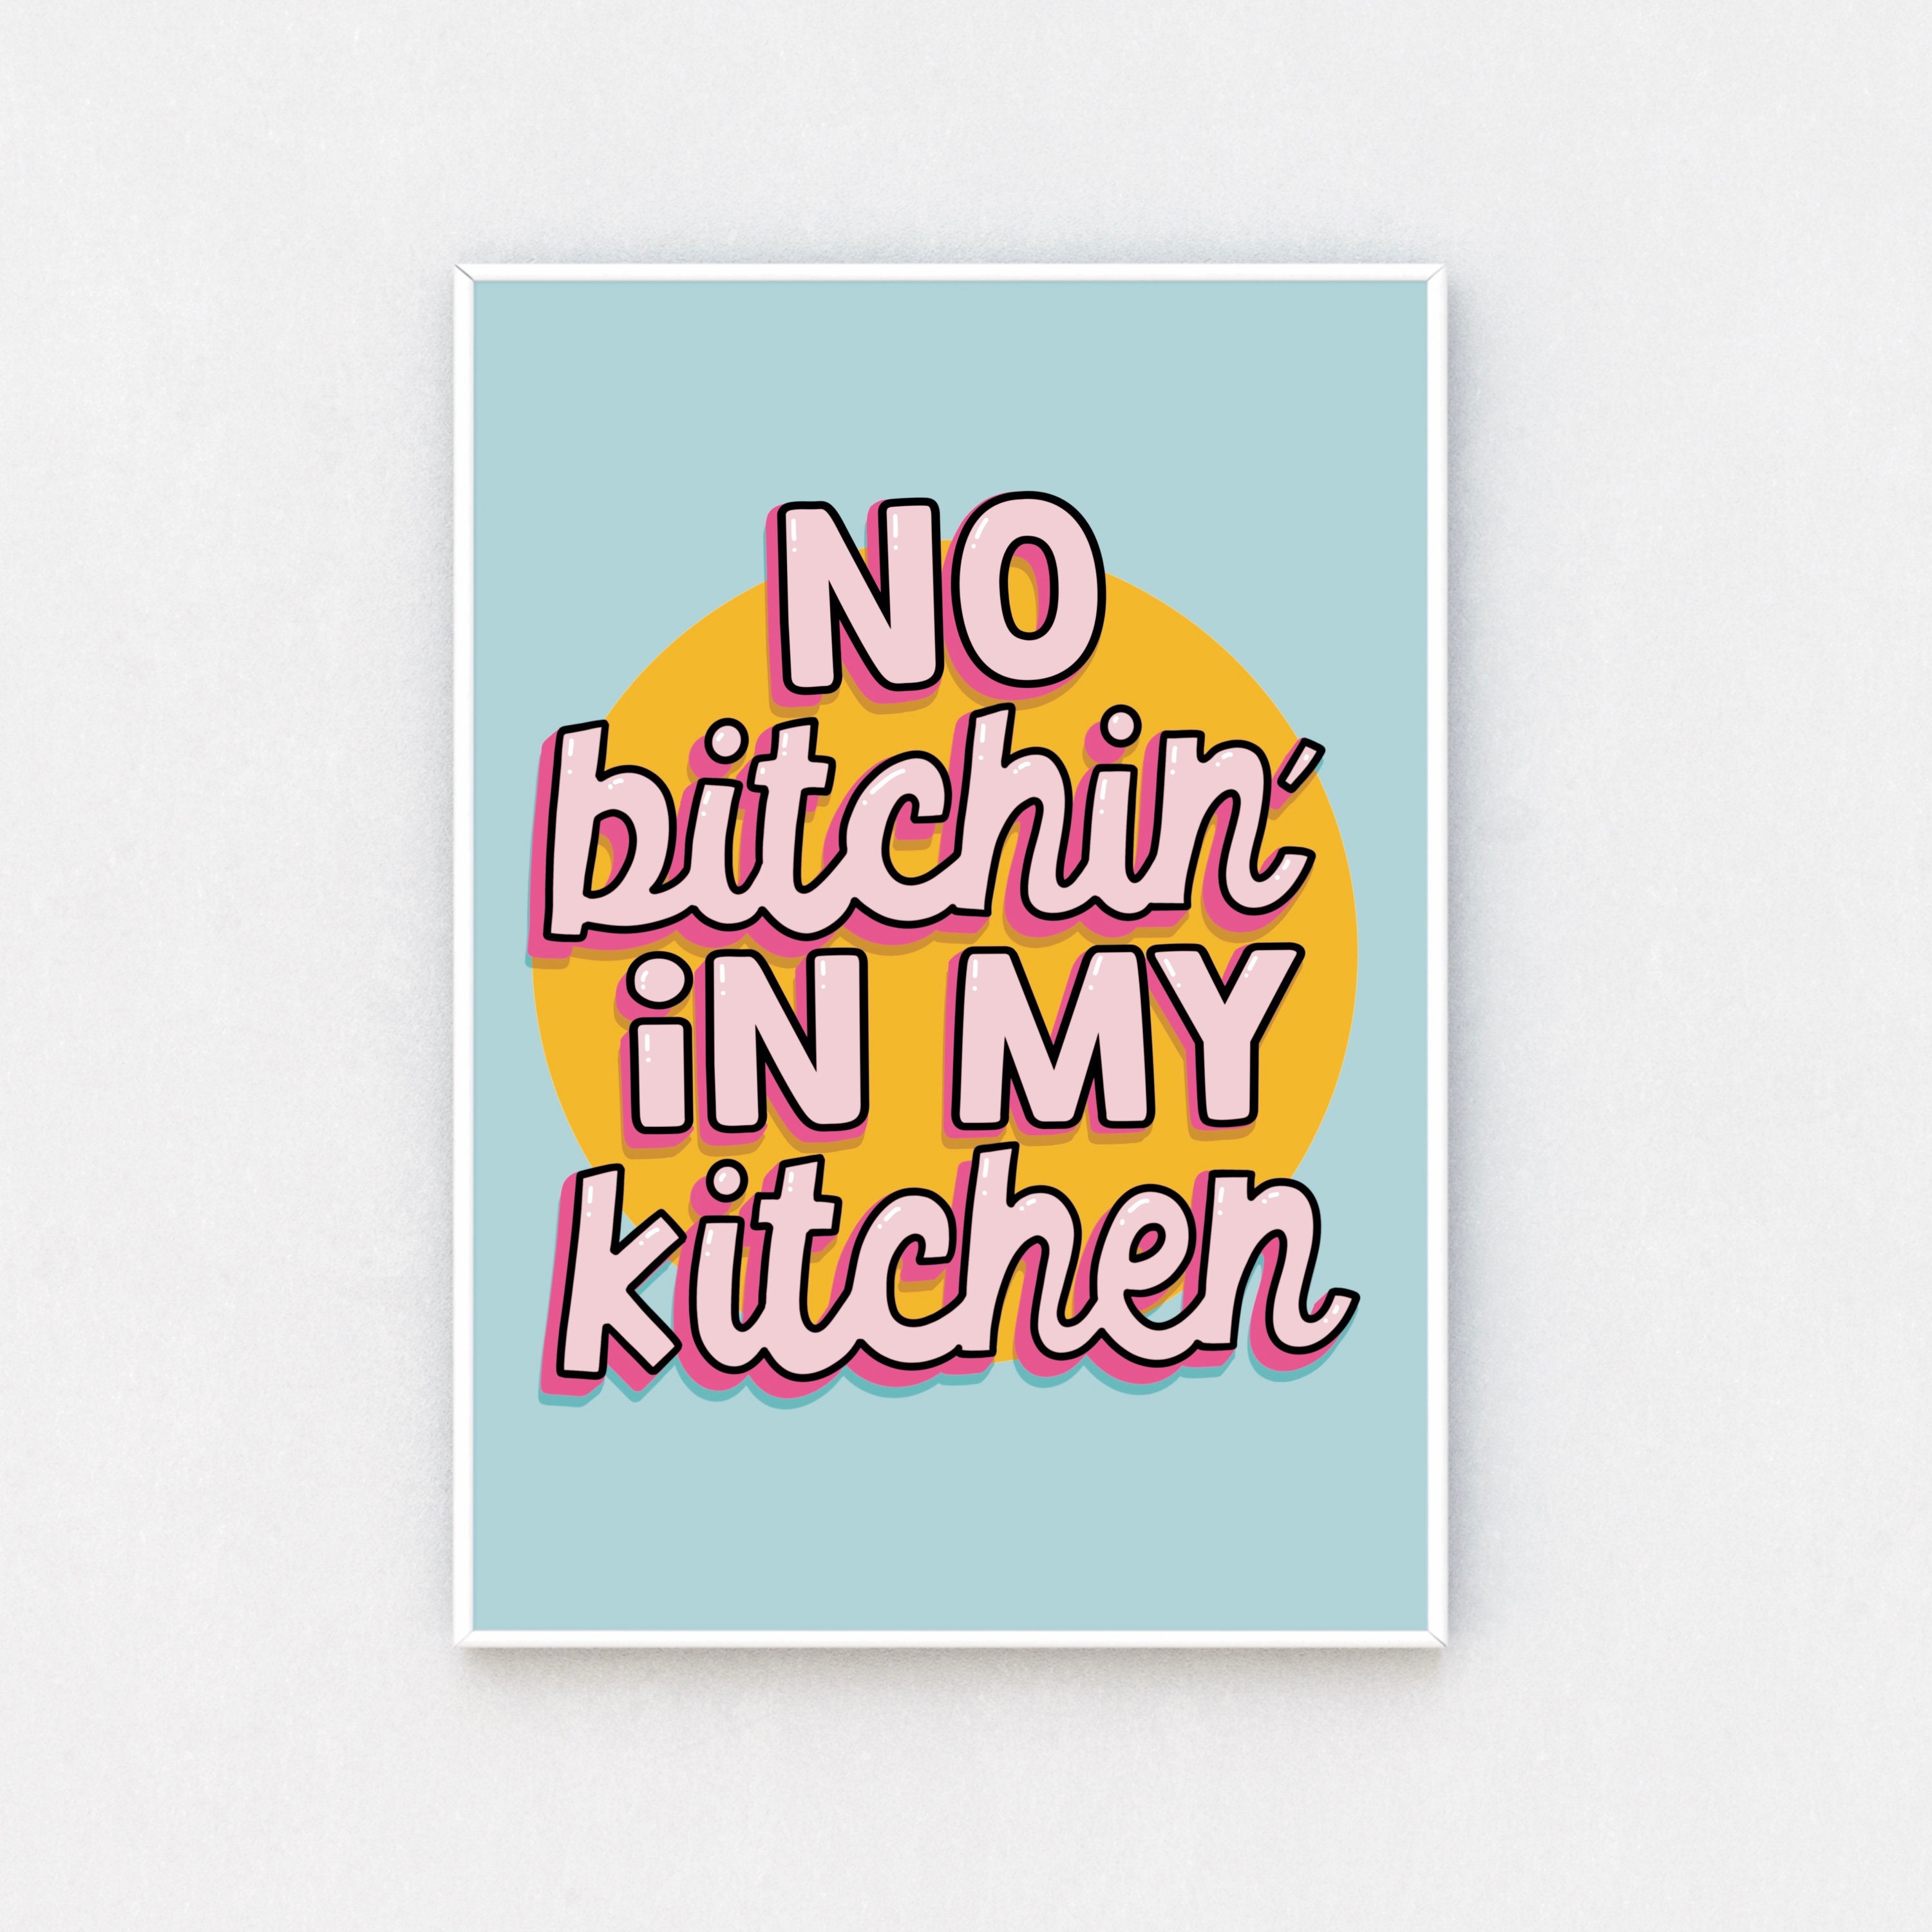 No bitchin kitchen in my